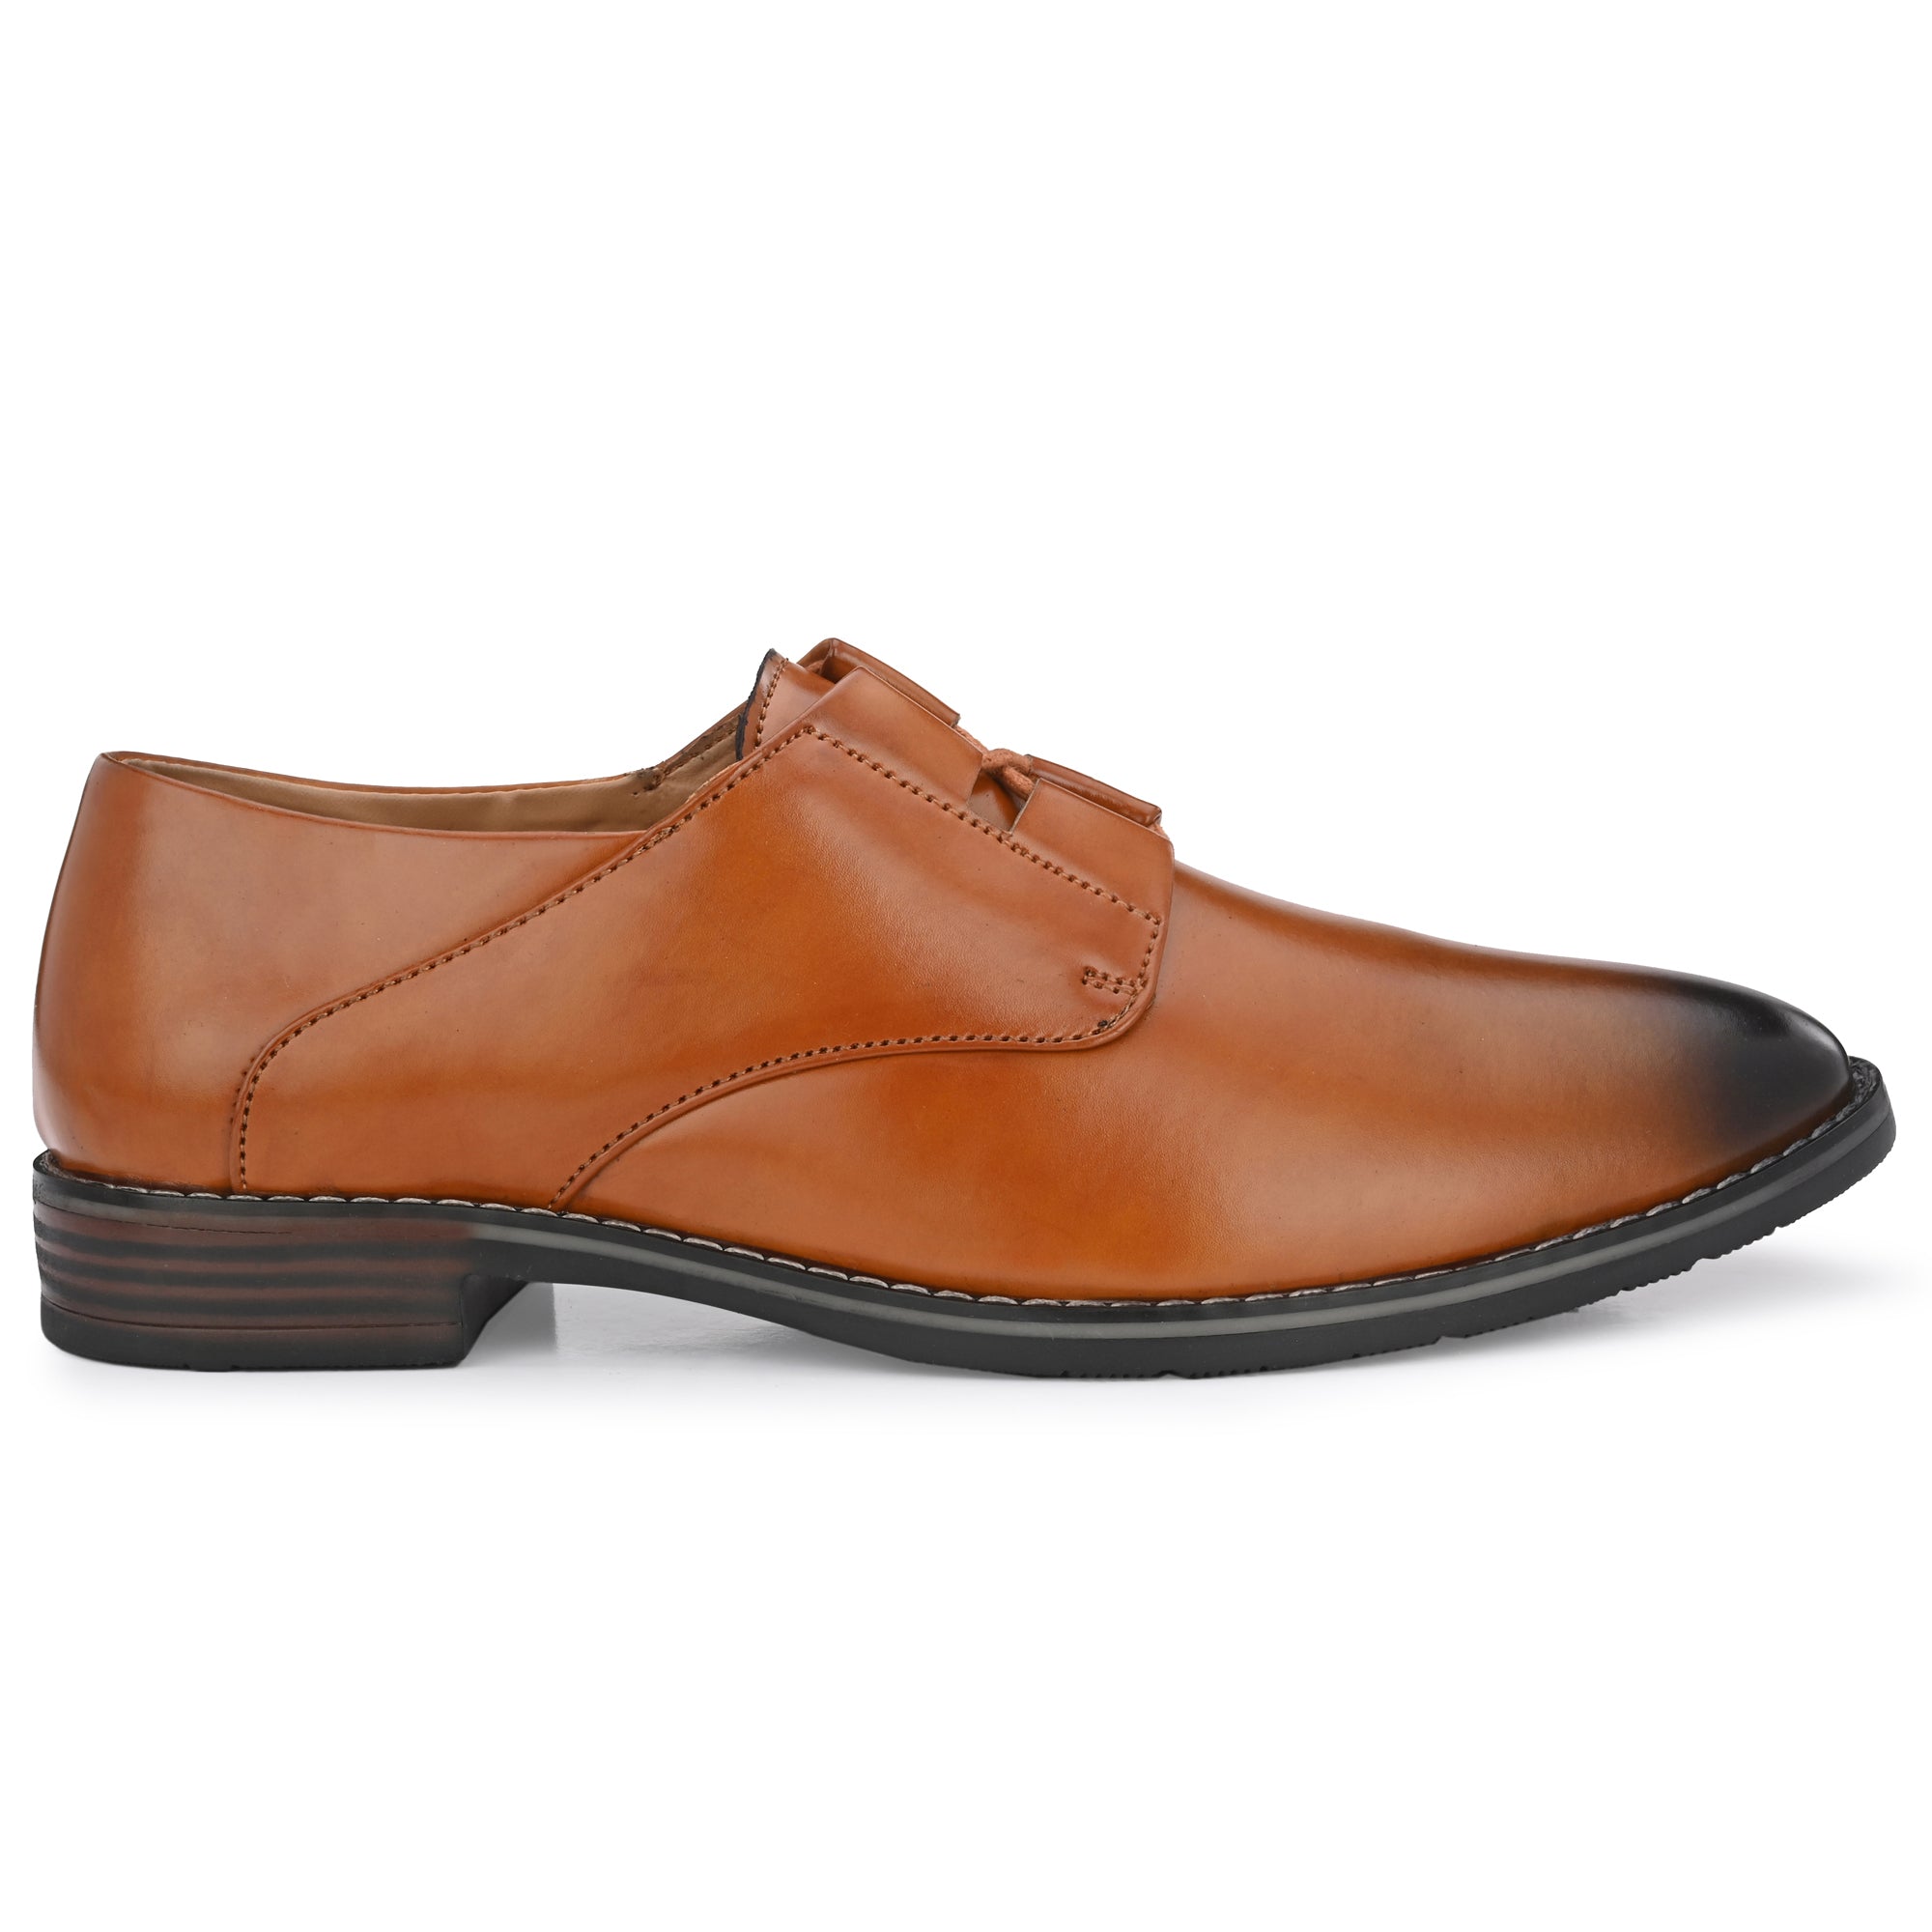 tan-formal-lace-up-attitudist-shoes-for-men-with-design-sp12c